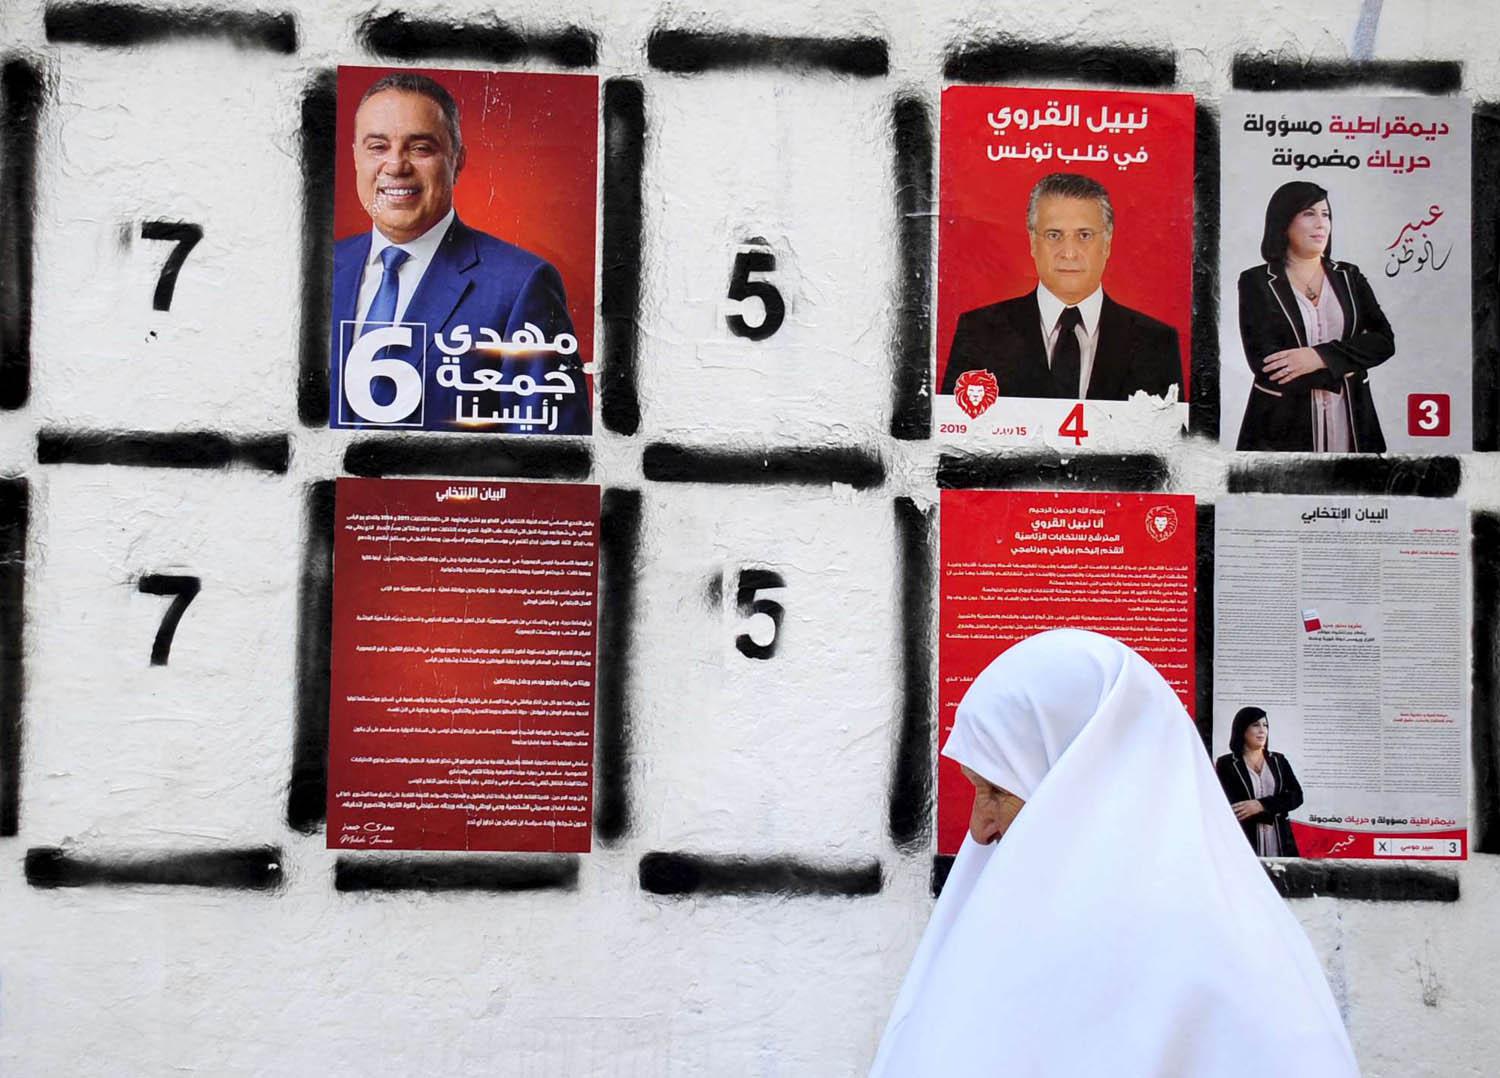 تونسية تمر من مجموعة صور وملصقات لمرشحي الرئاسة